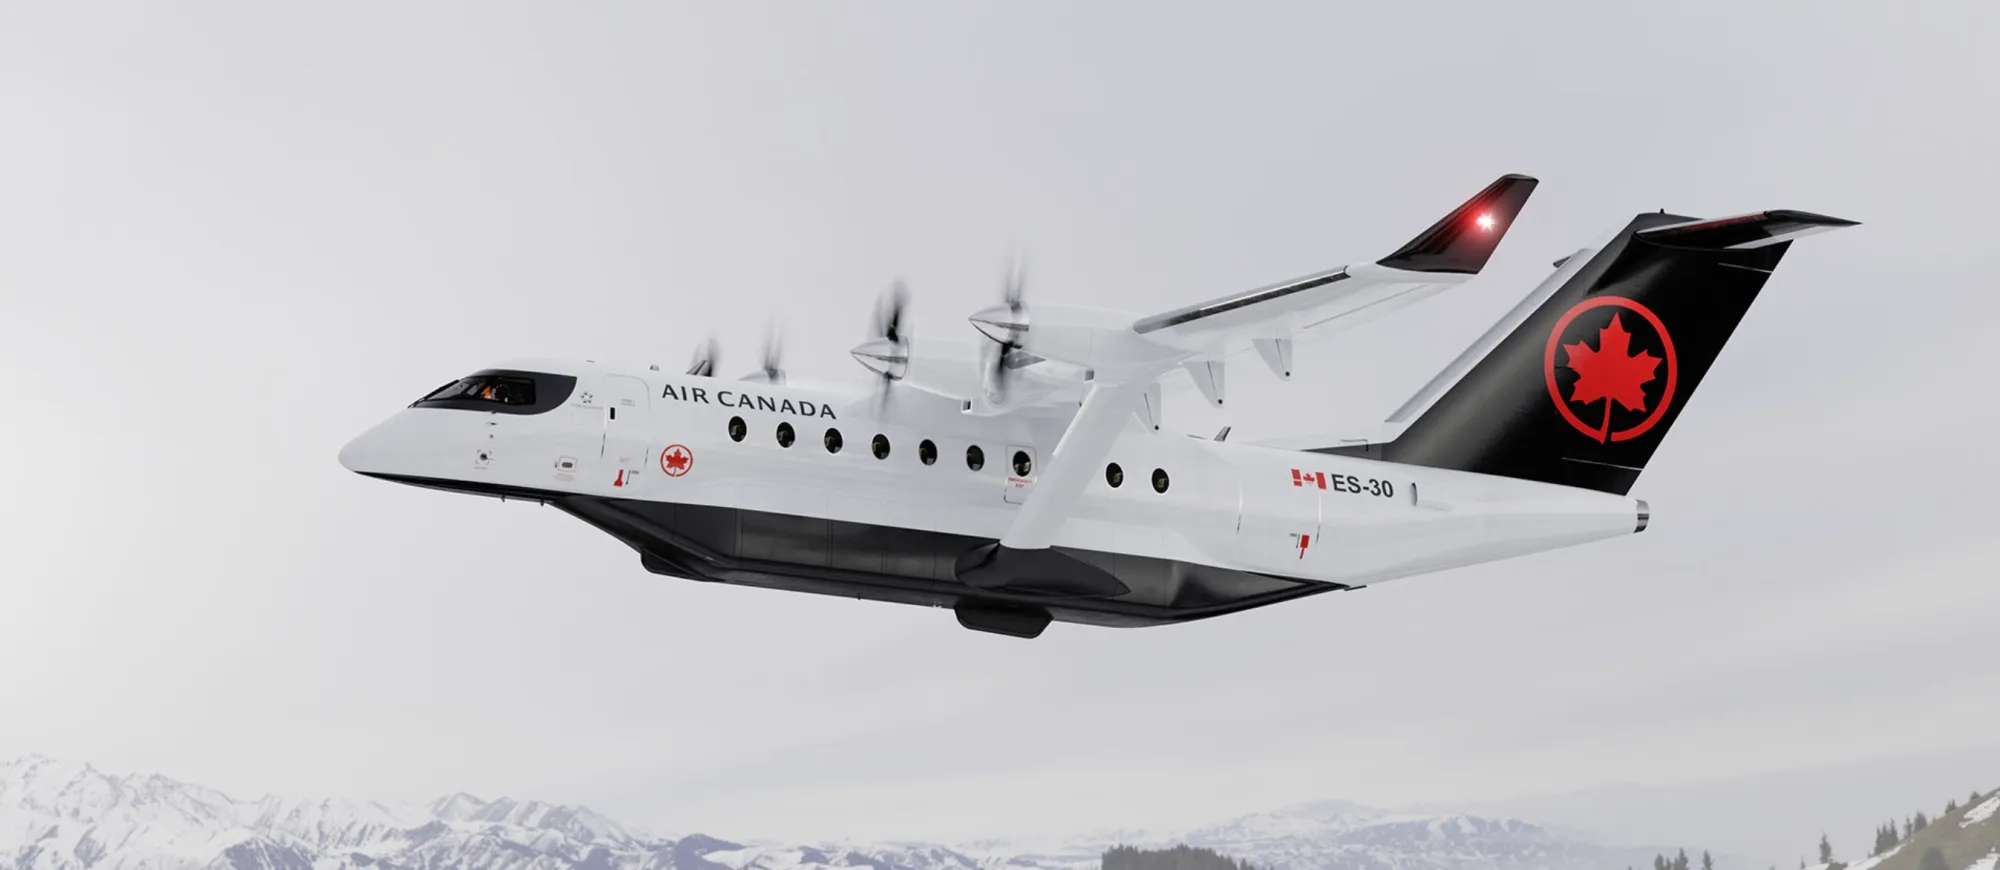 Heart Aerospace prezentuje elektryczny samolot ES-30, pozyskuje 10 000 000 dolarów i otrzymuje zamówienie na 30 samolotów dla Air Canada